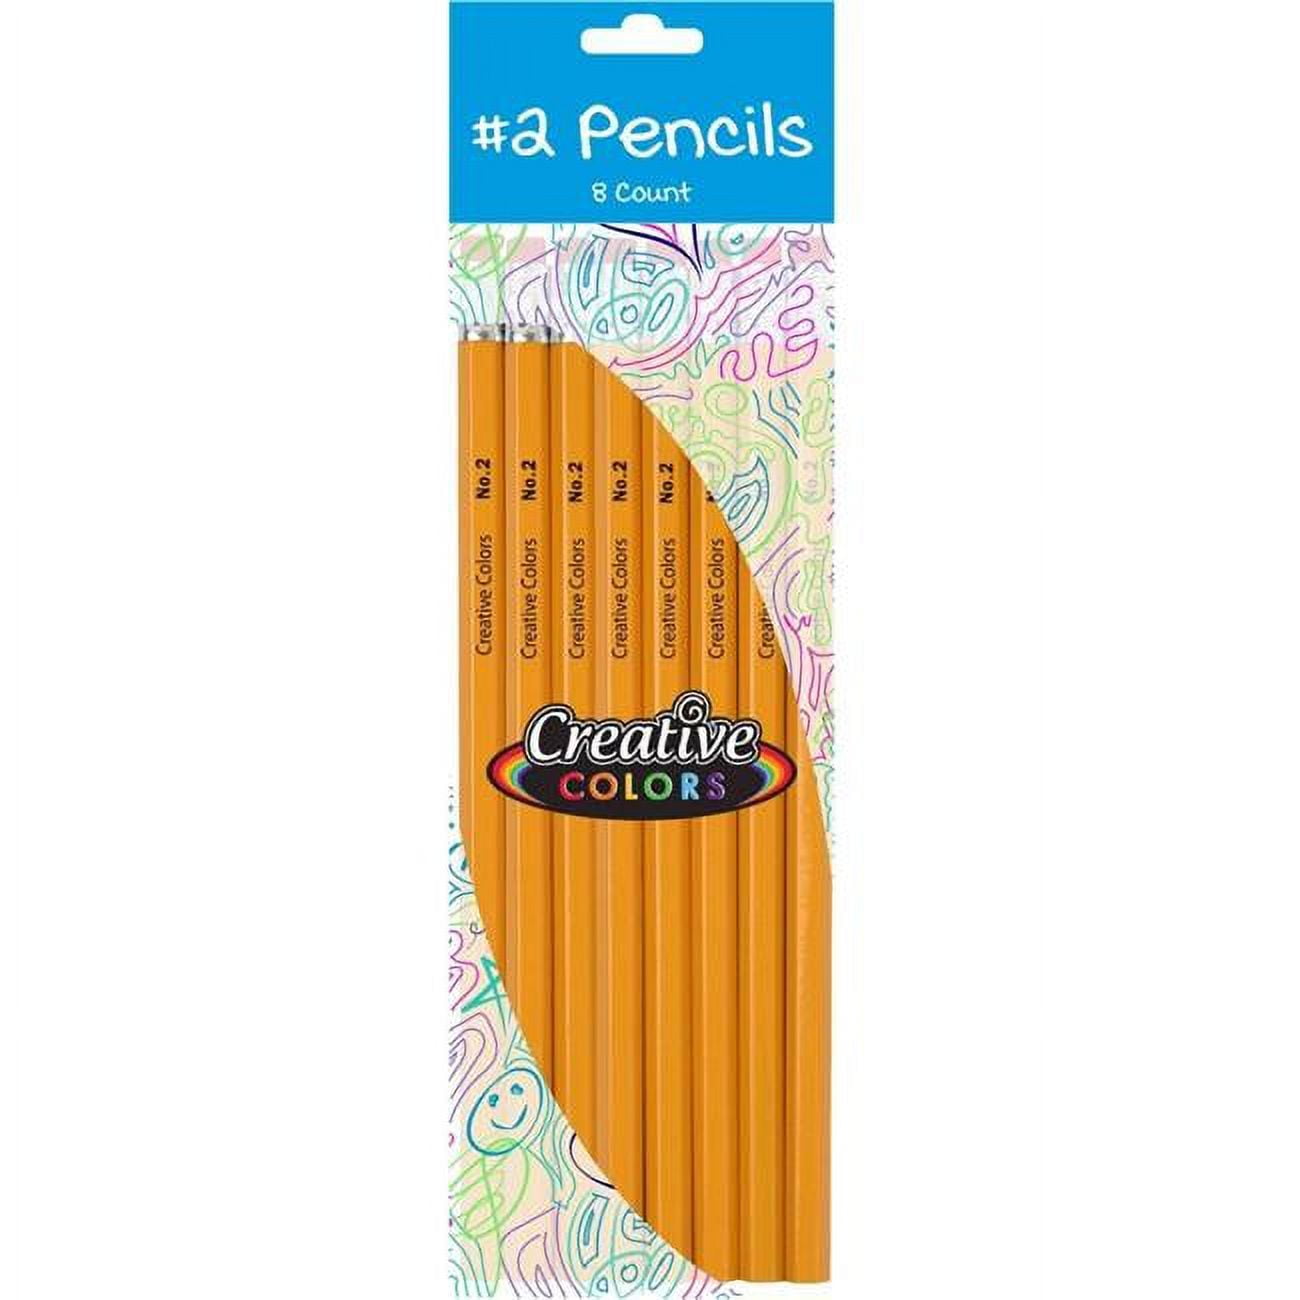 2342106 No.2 Pencils - Case Of 96 - 8 Count